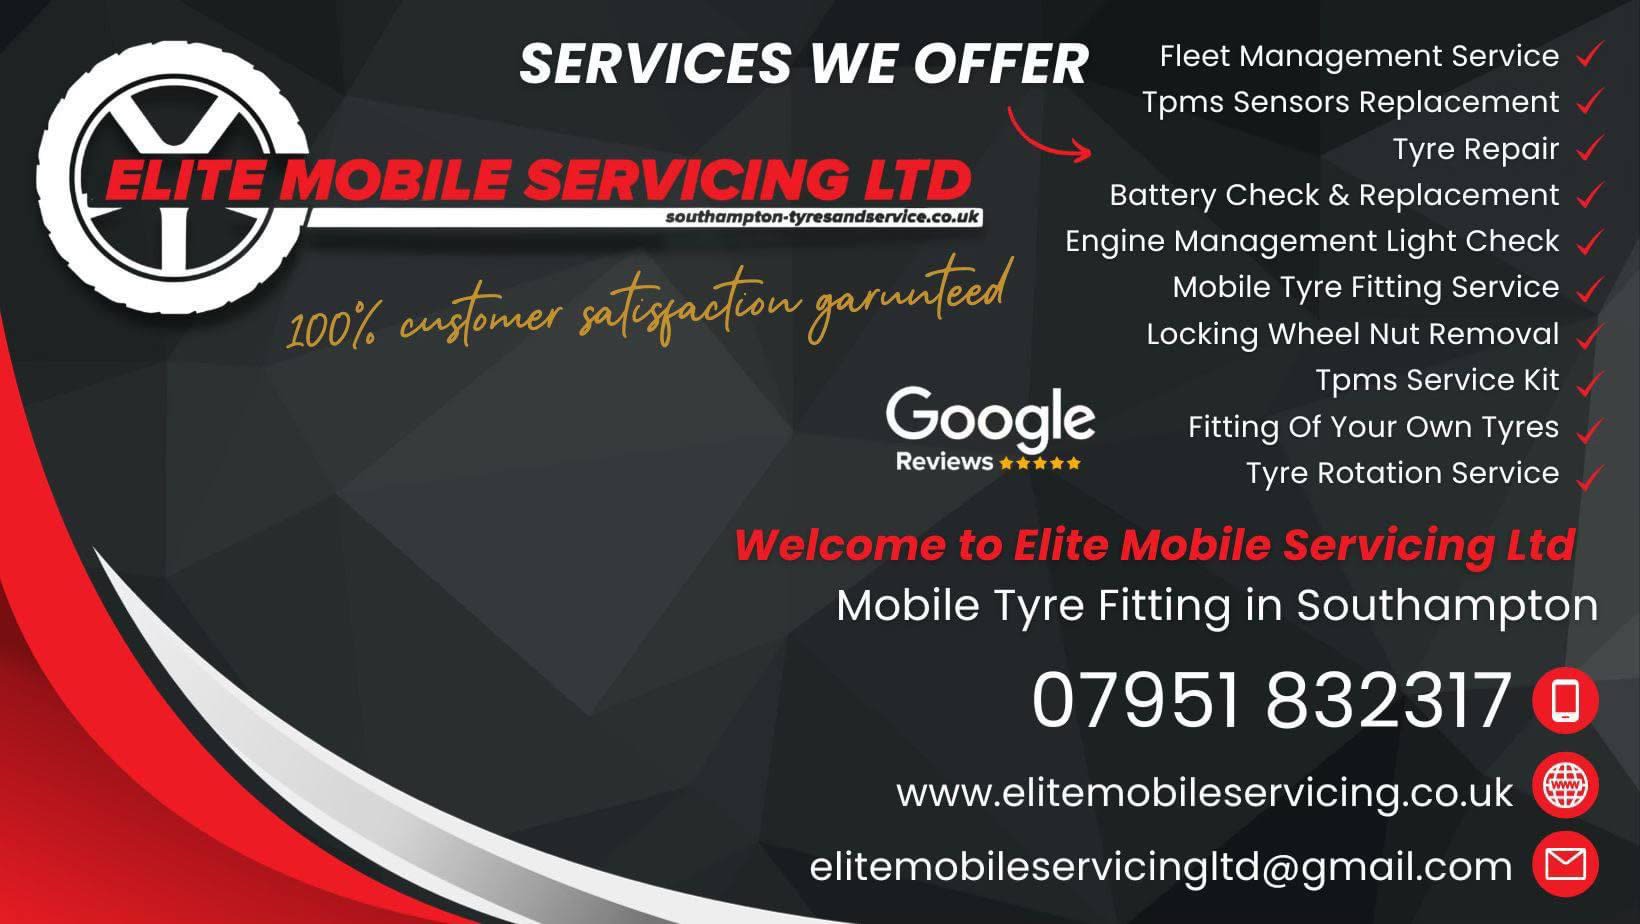 Elite Mobile Servicing Ltd Southampton 07951 832317